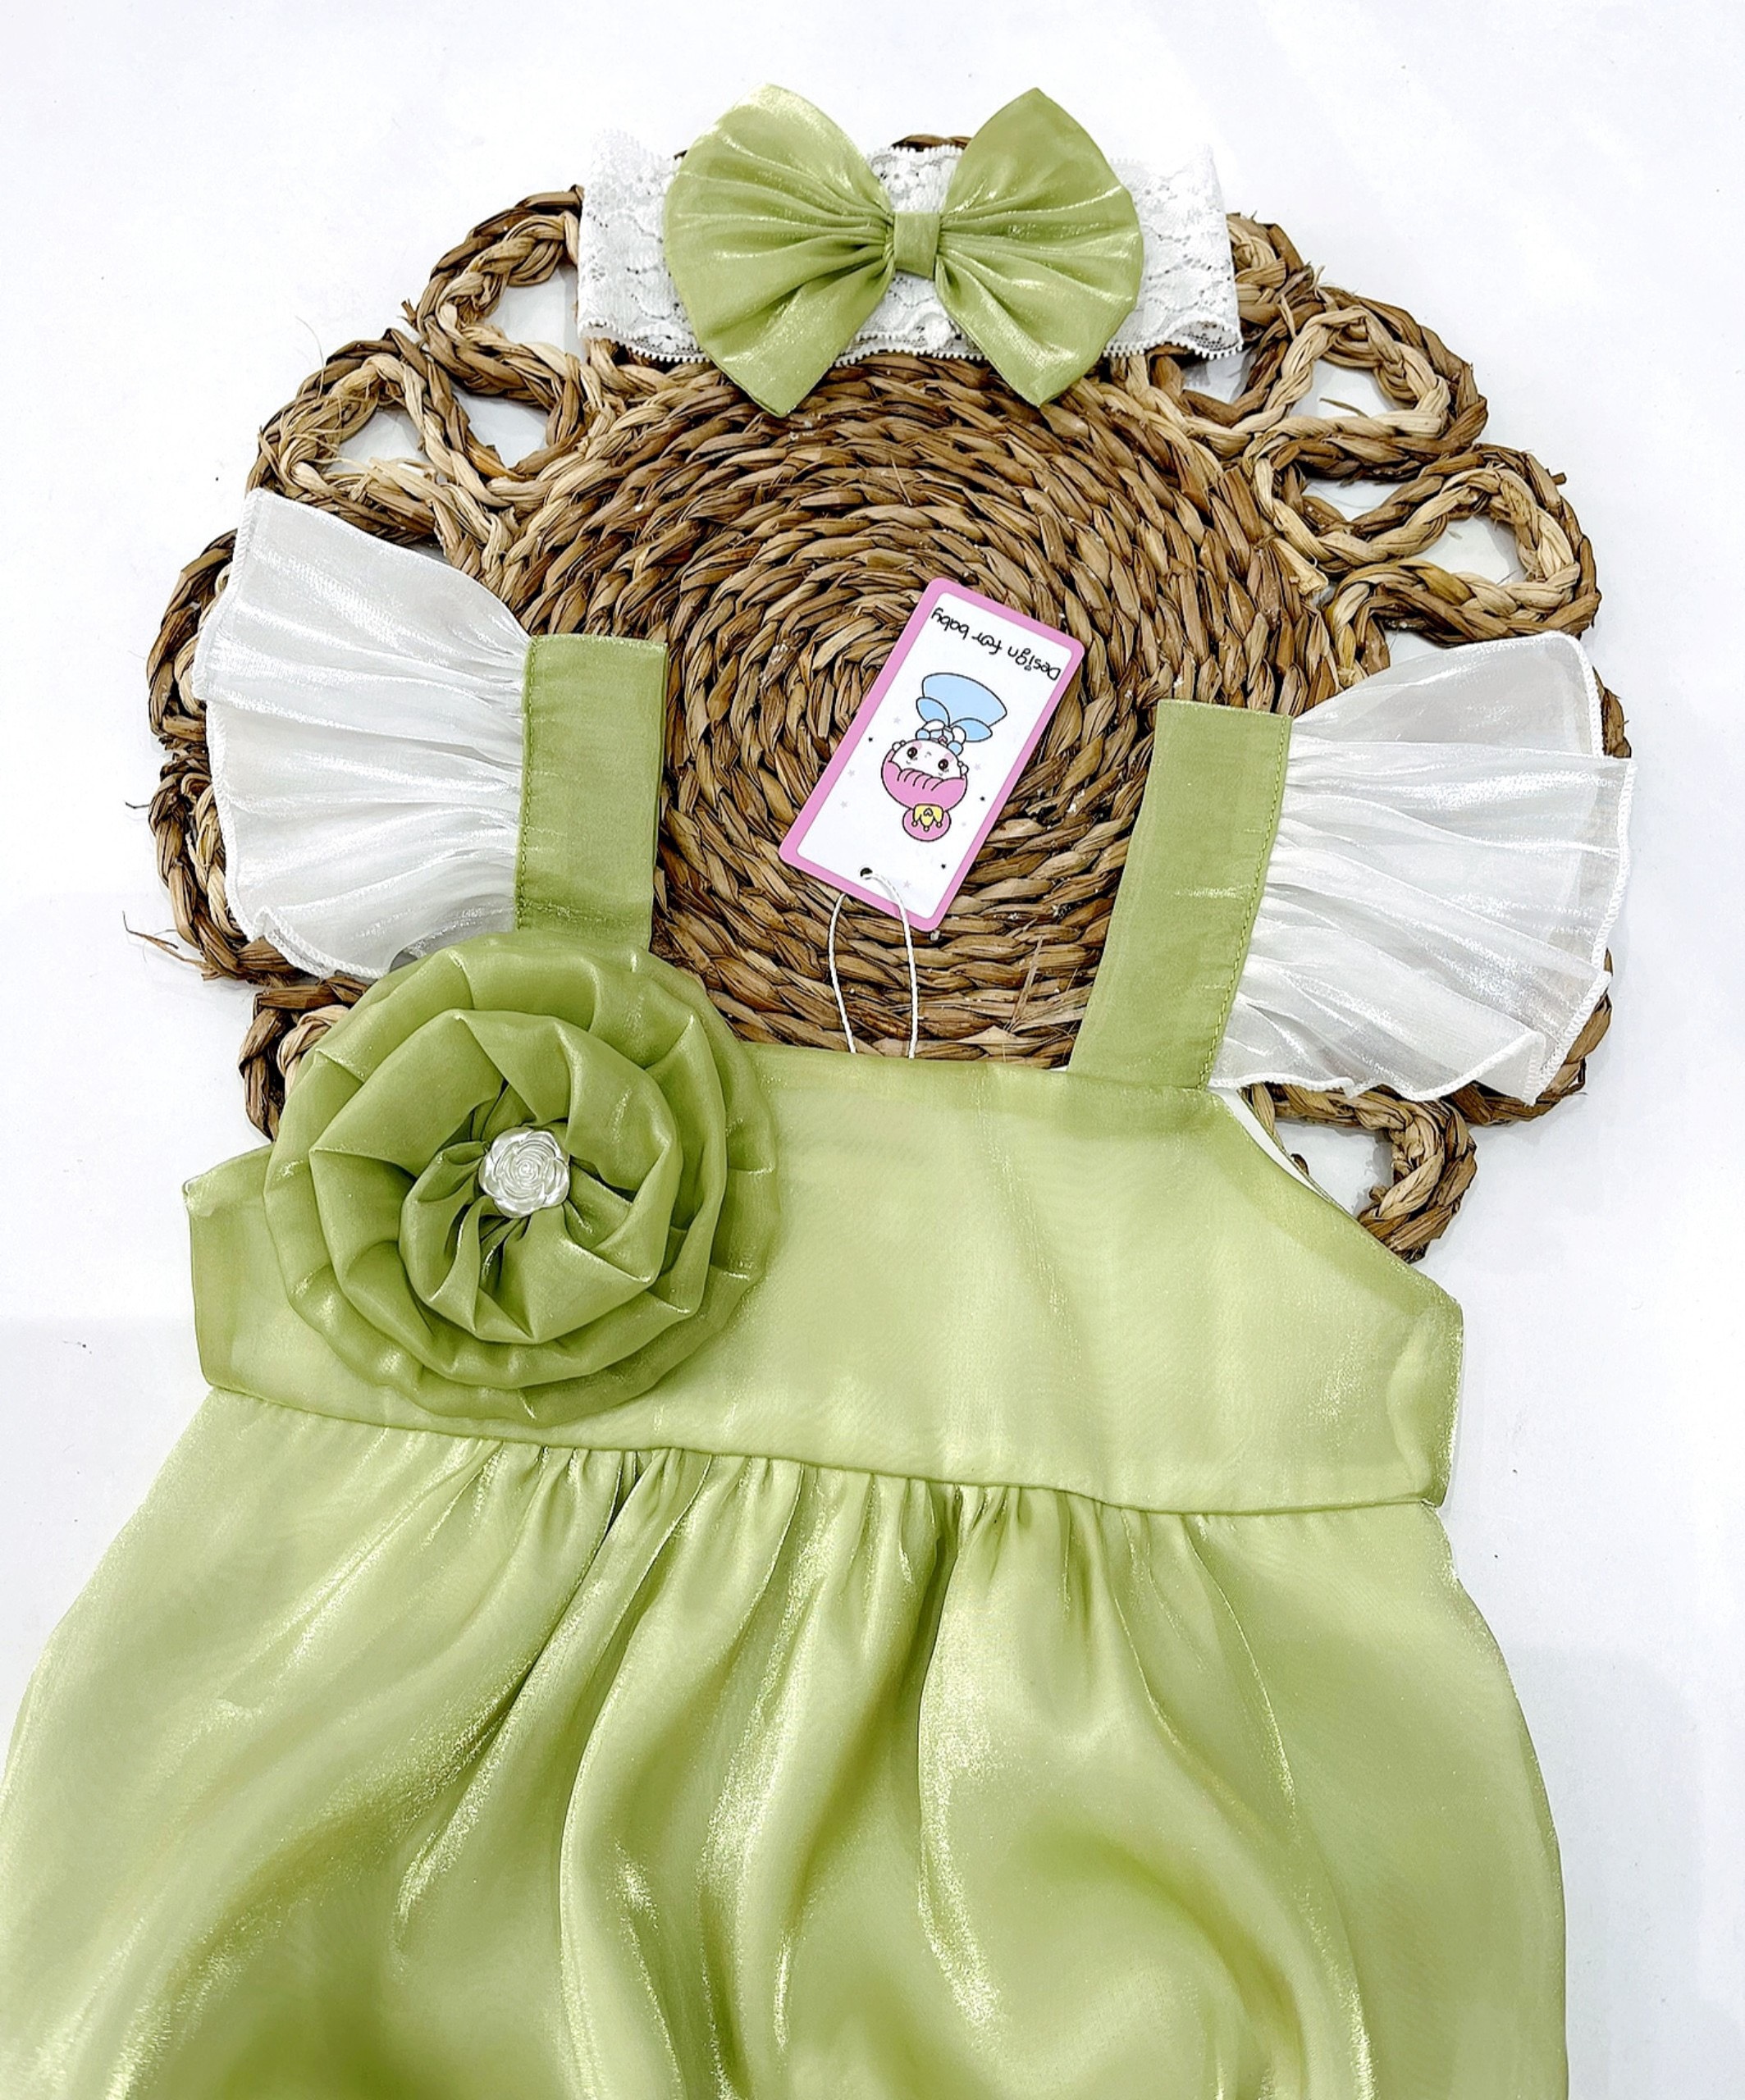 Body cánh tiên xanh bơ vải tơ Organza mềm mại tặng kèm phụ kiện xinh cho bé gái sơ sinh-12kg